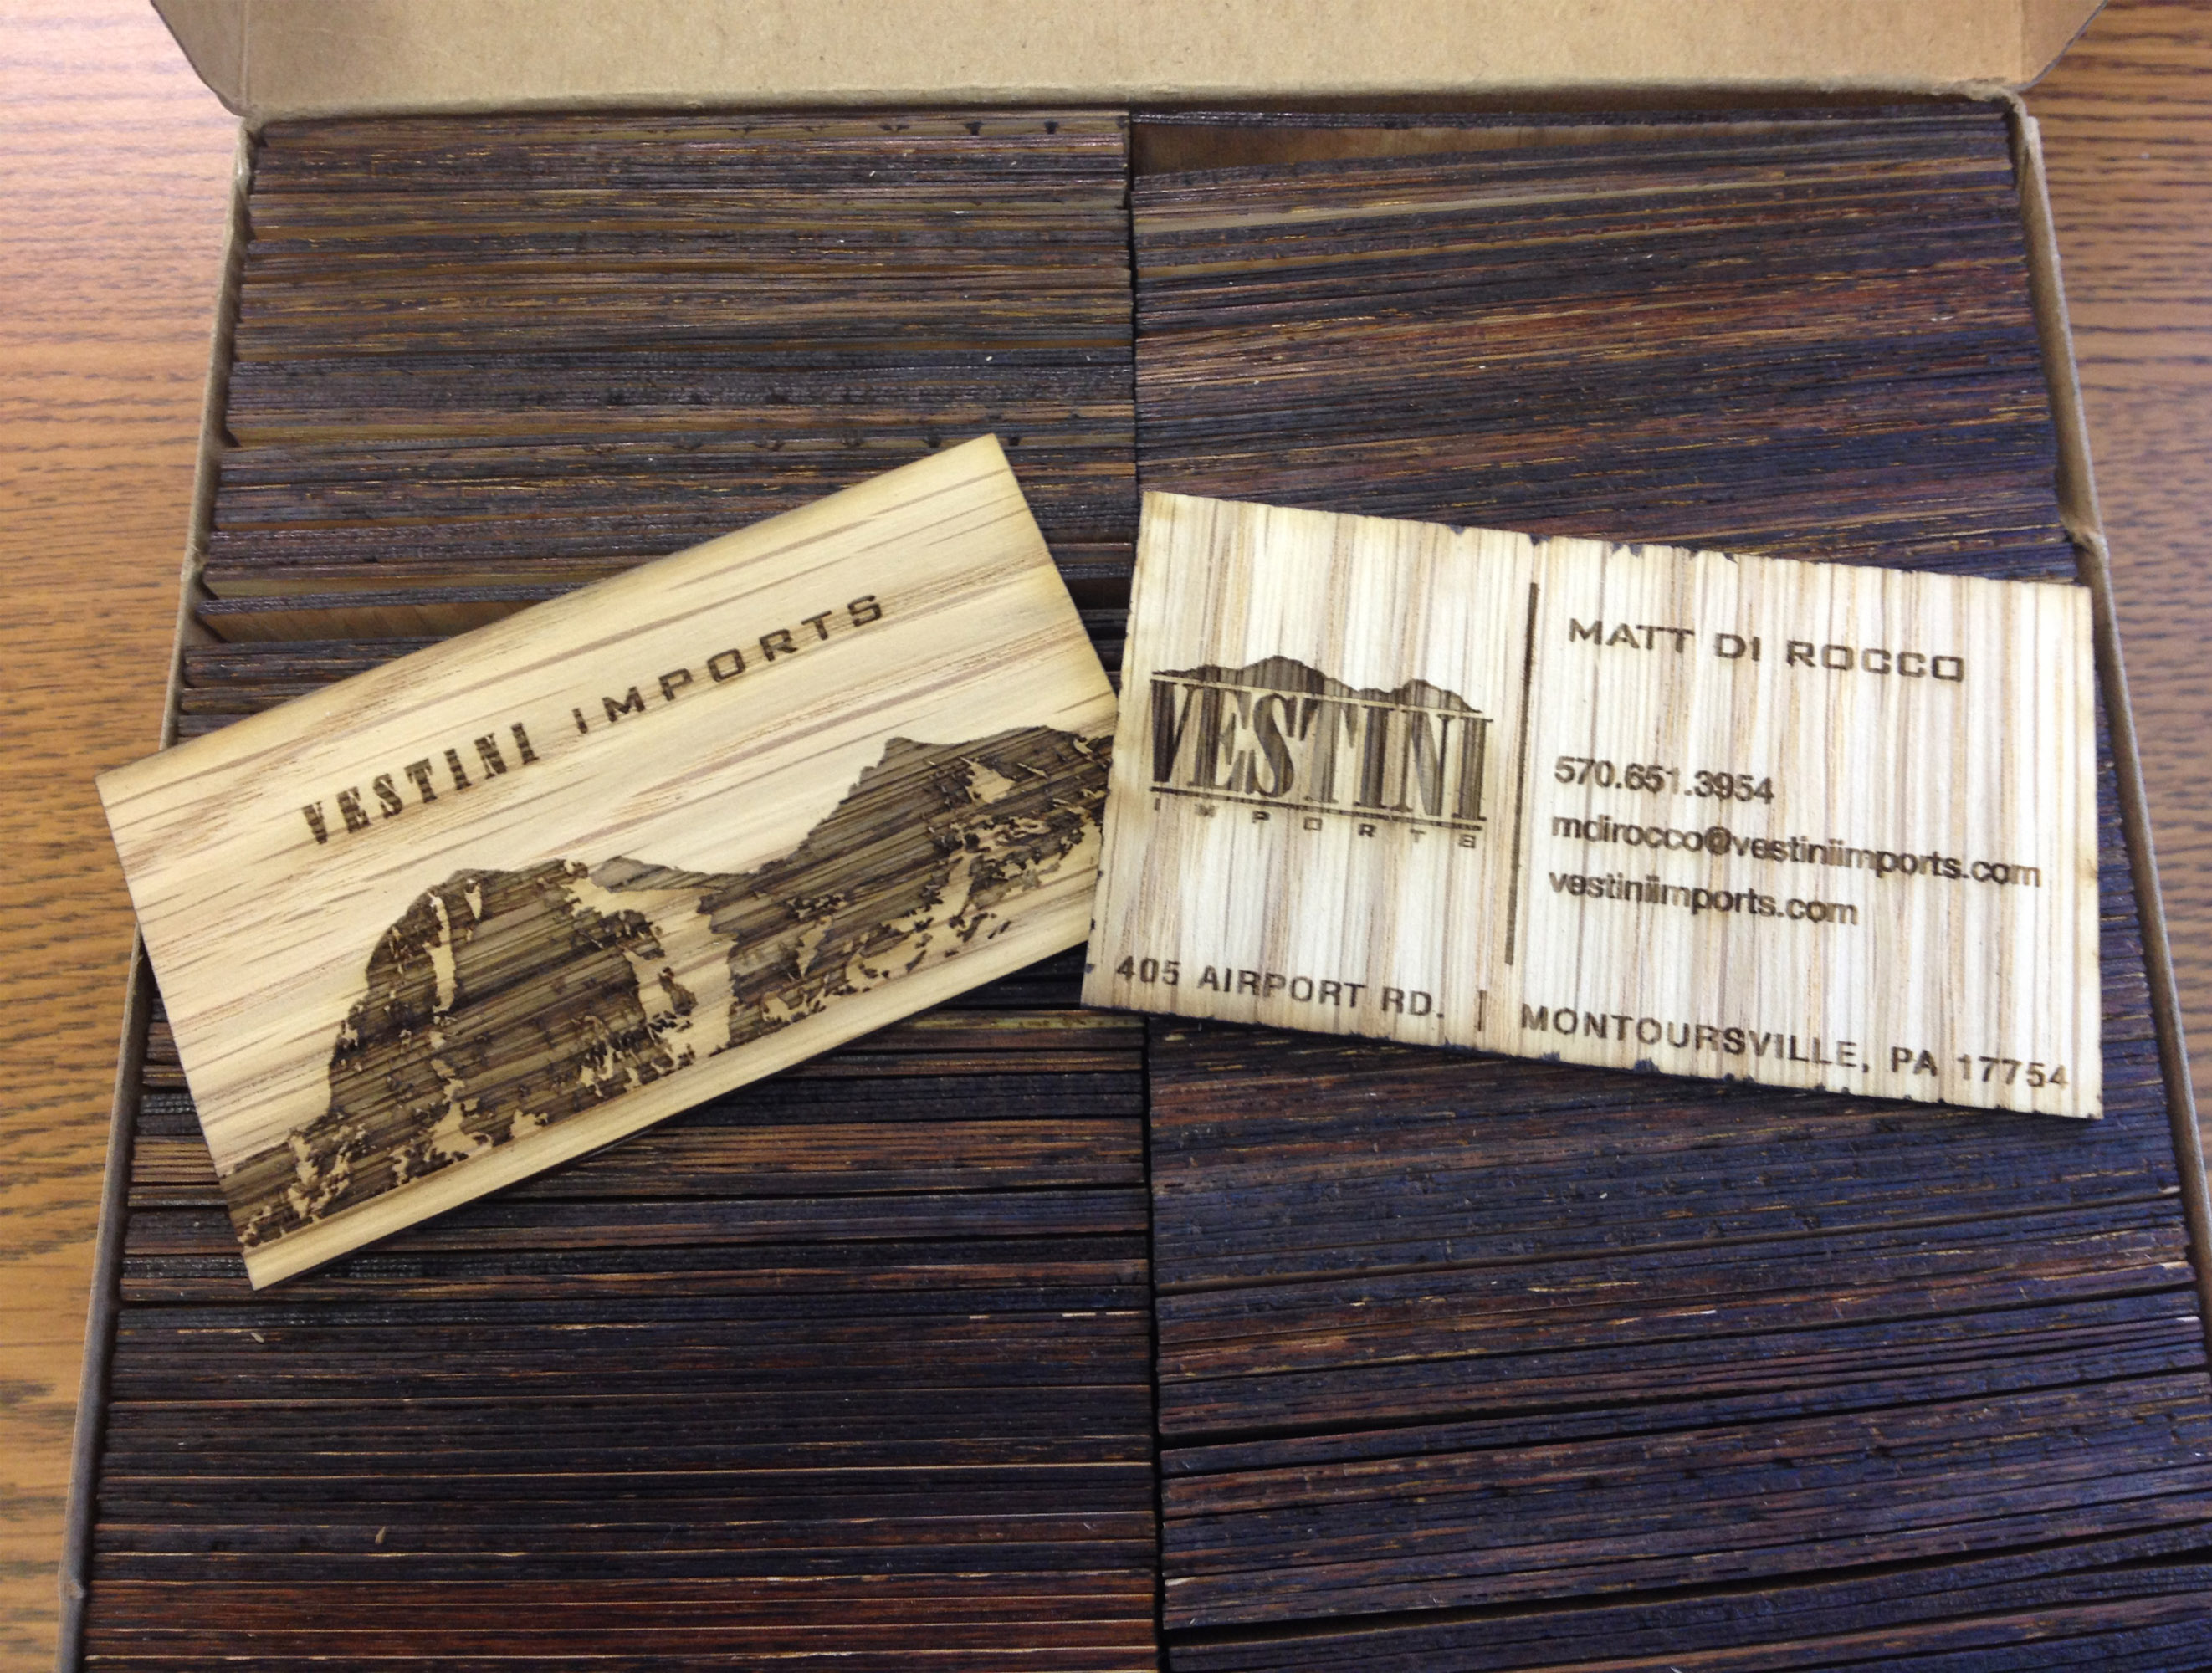 Wooden Business Card Design